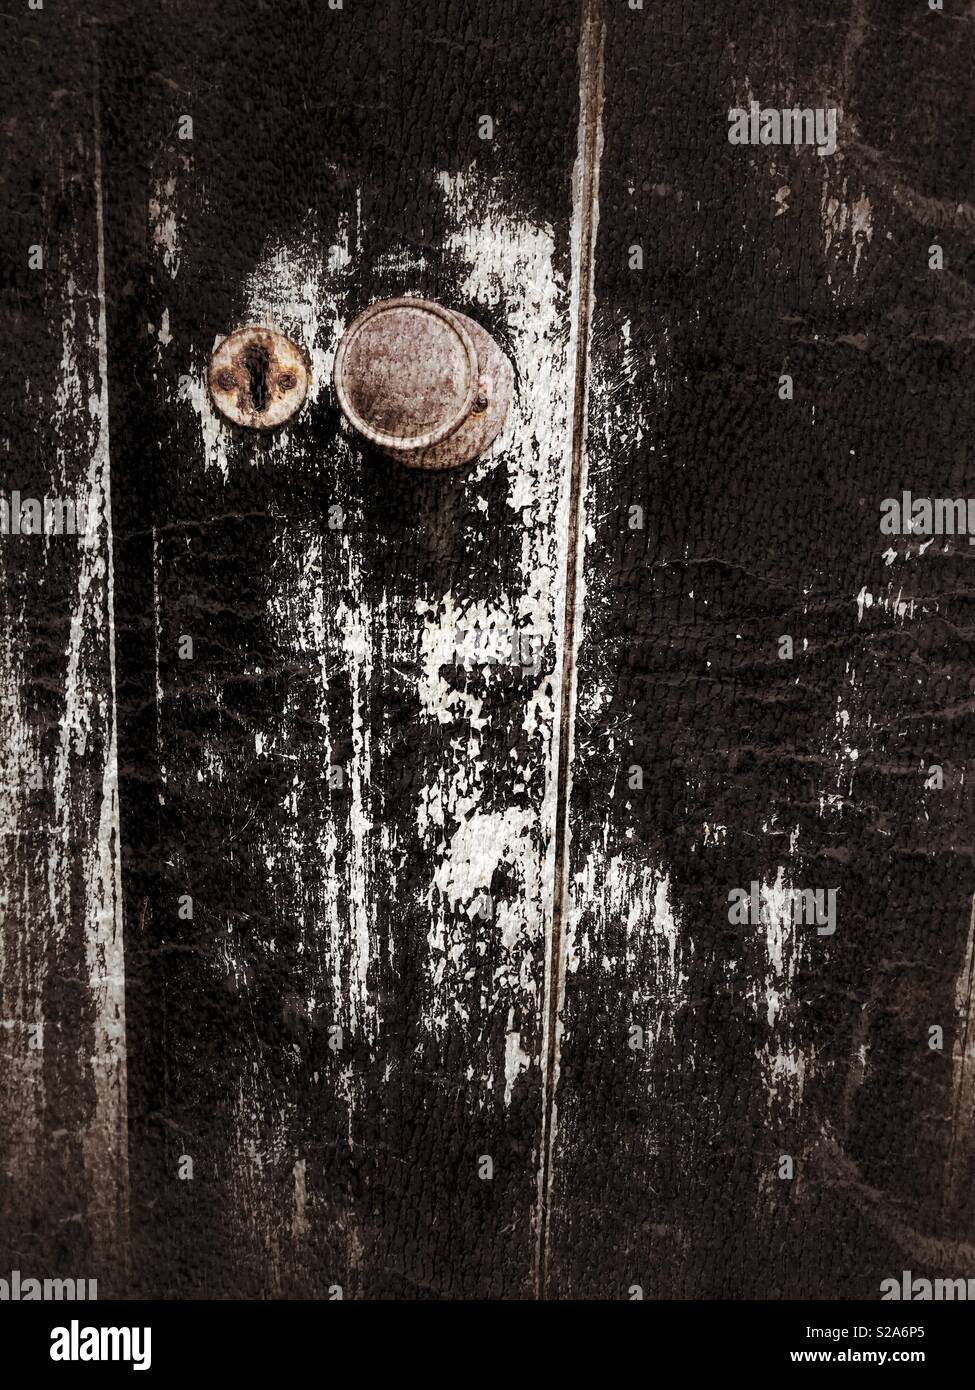 Doorknob on an old black flaking painted door. Stock Photo